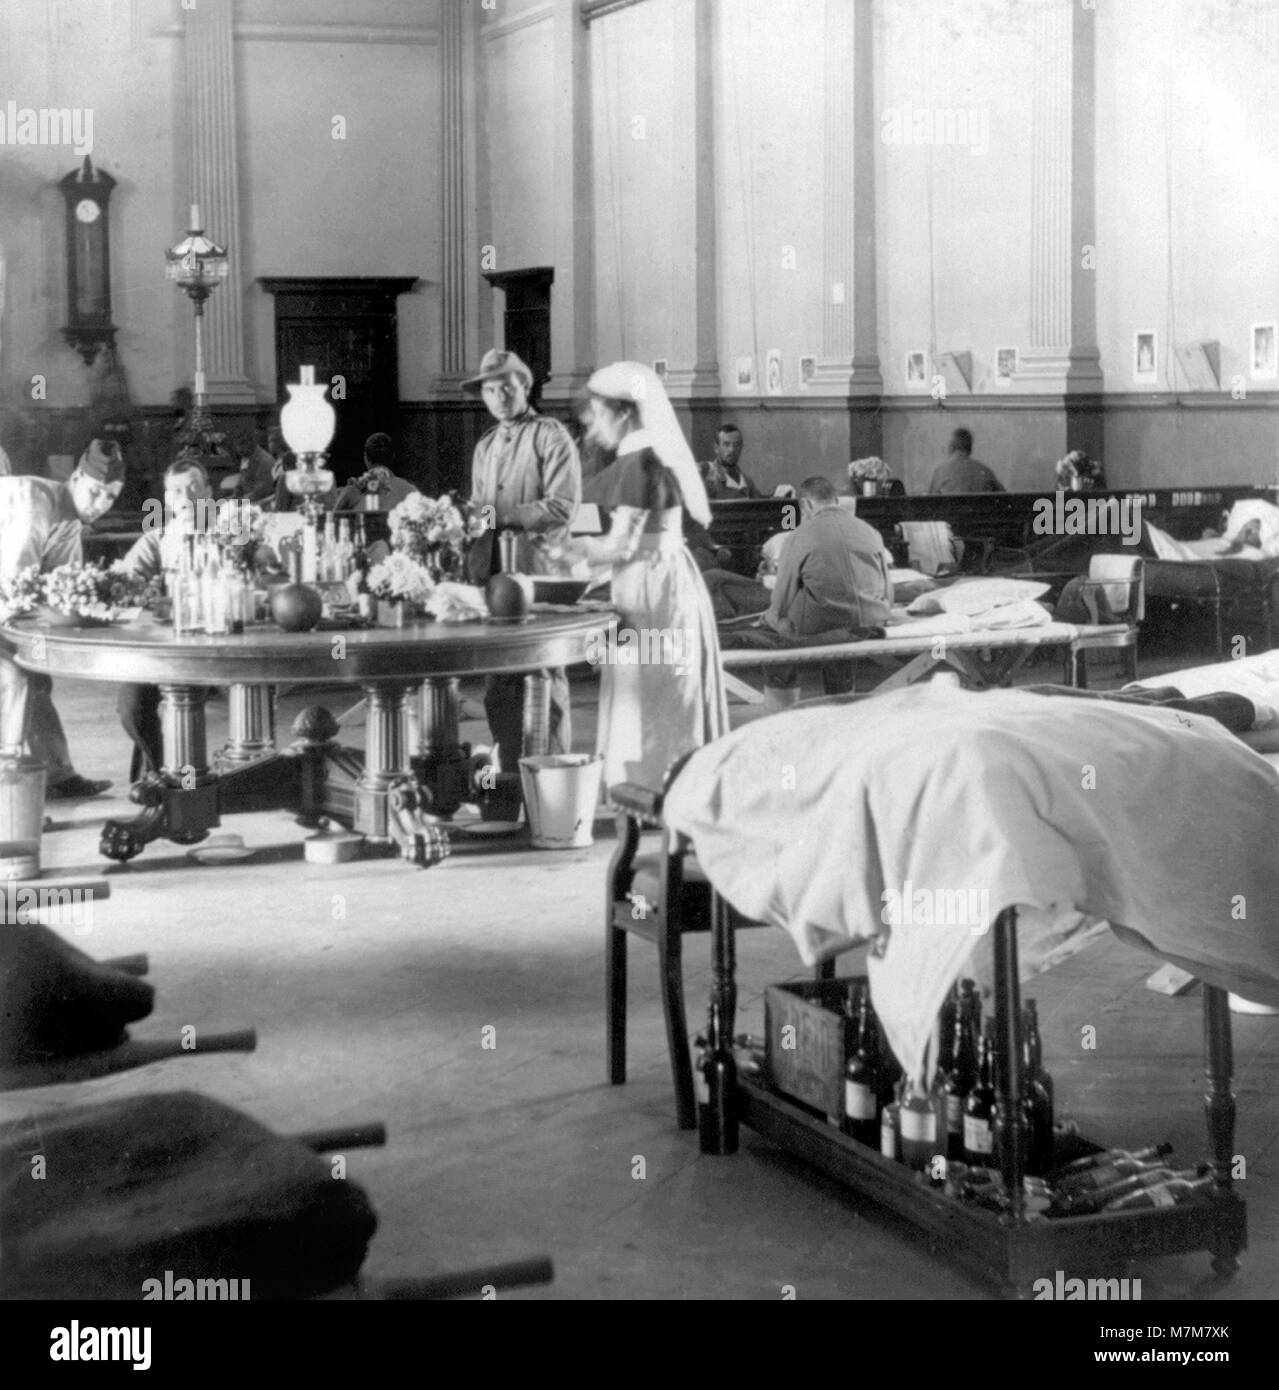 Guerre des Boers. Les troupes britanniques d'être traités à l'hôpital, Raadzaal, Bloemfontein, Afrique du Sud, au cours de la Deuxième Guerre des Boers (1899-1902). Photo de Keystone, c.1900 Banque D'Images